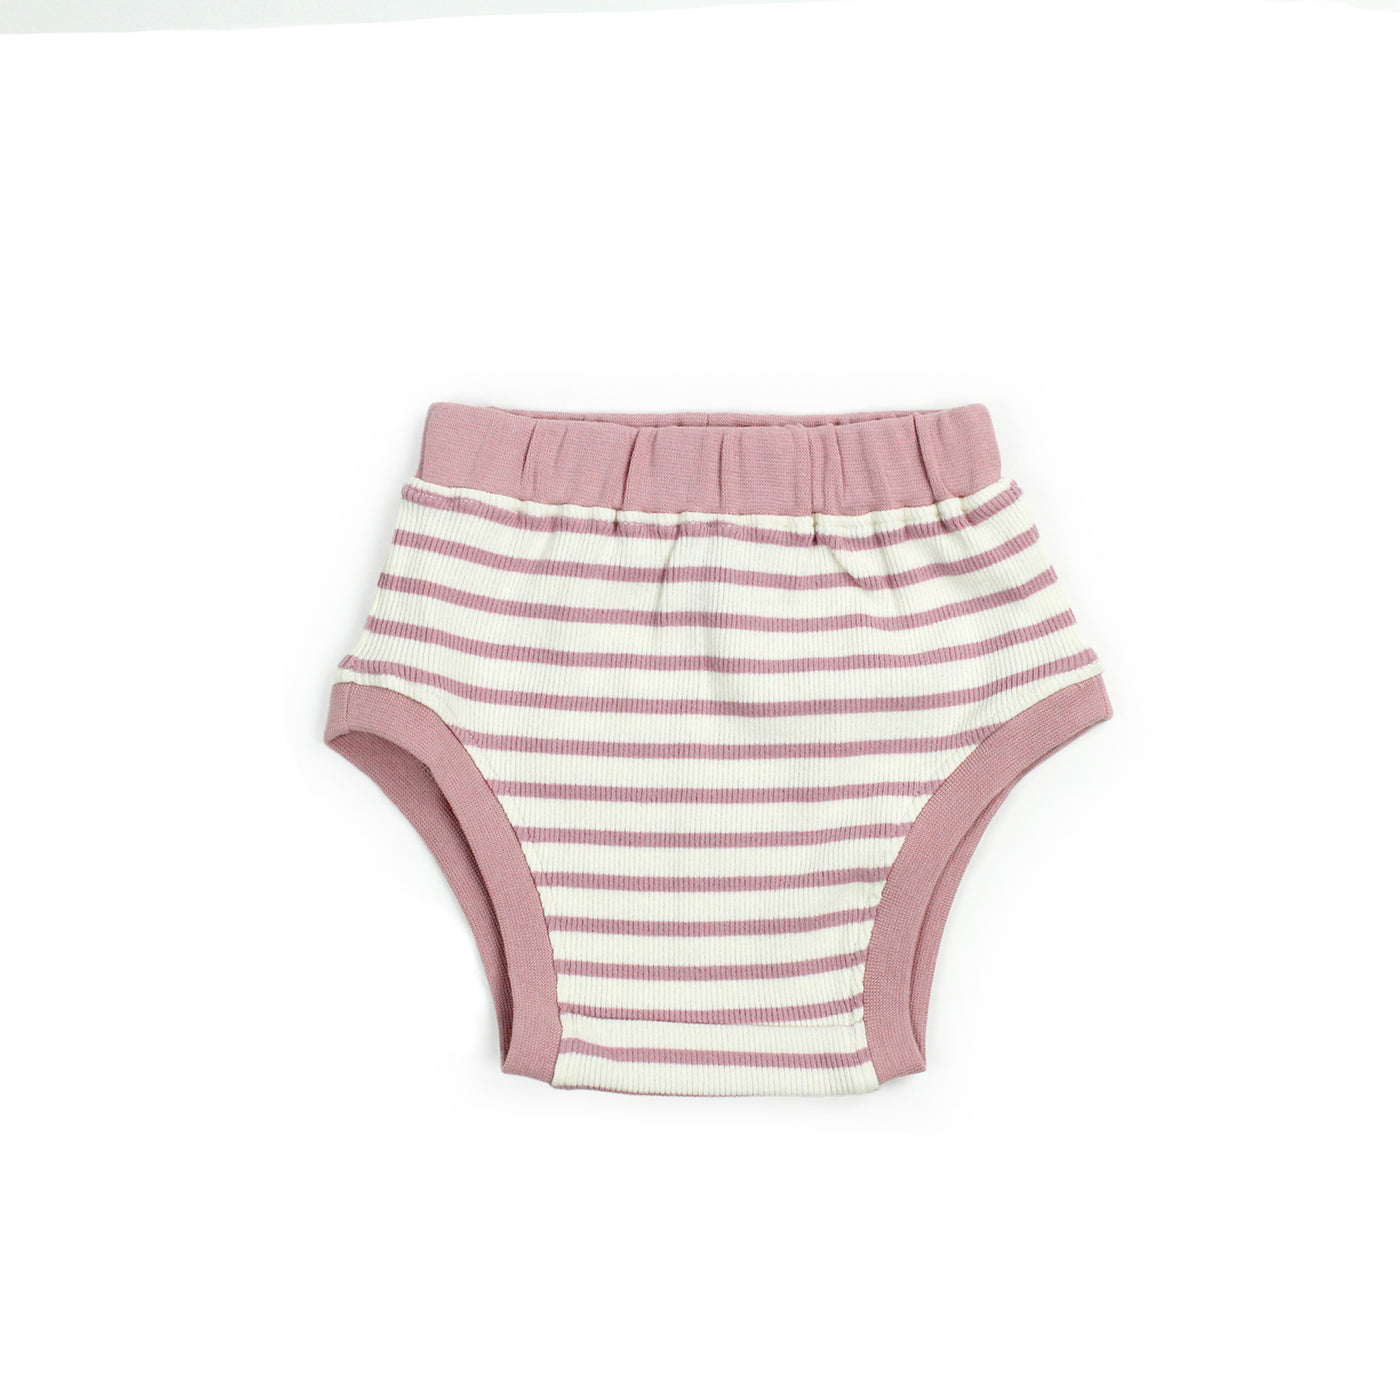 6-12 month pink organic baby underwear